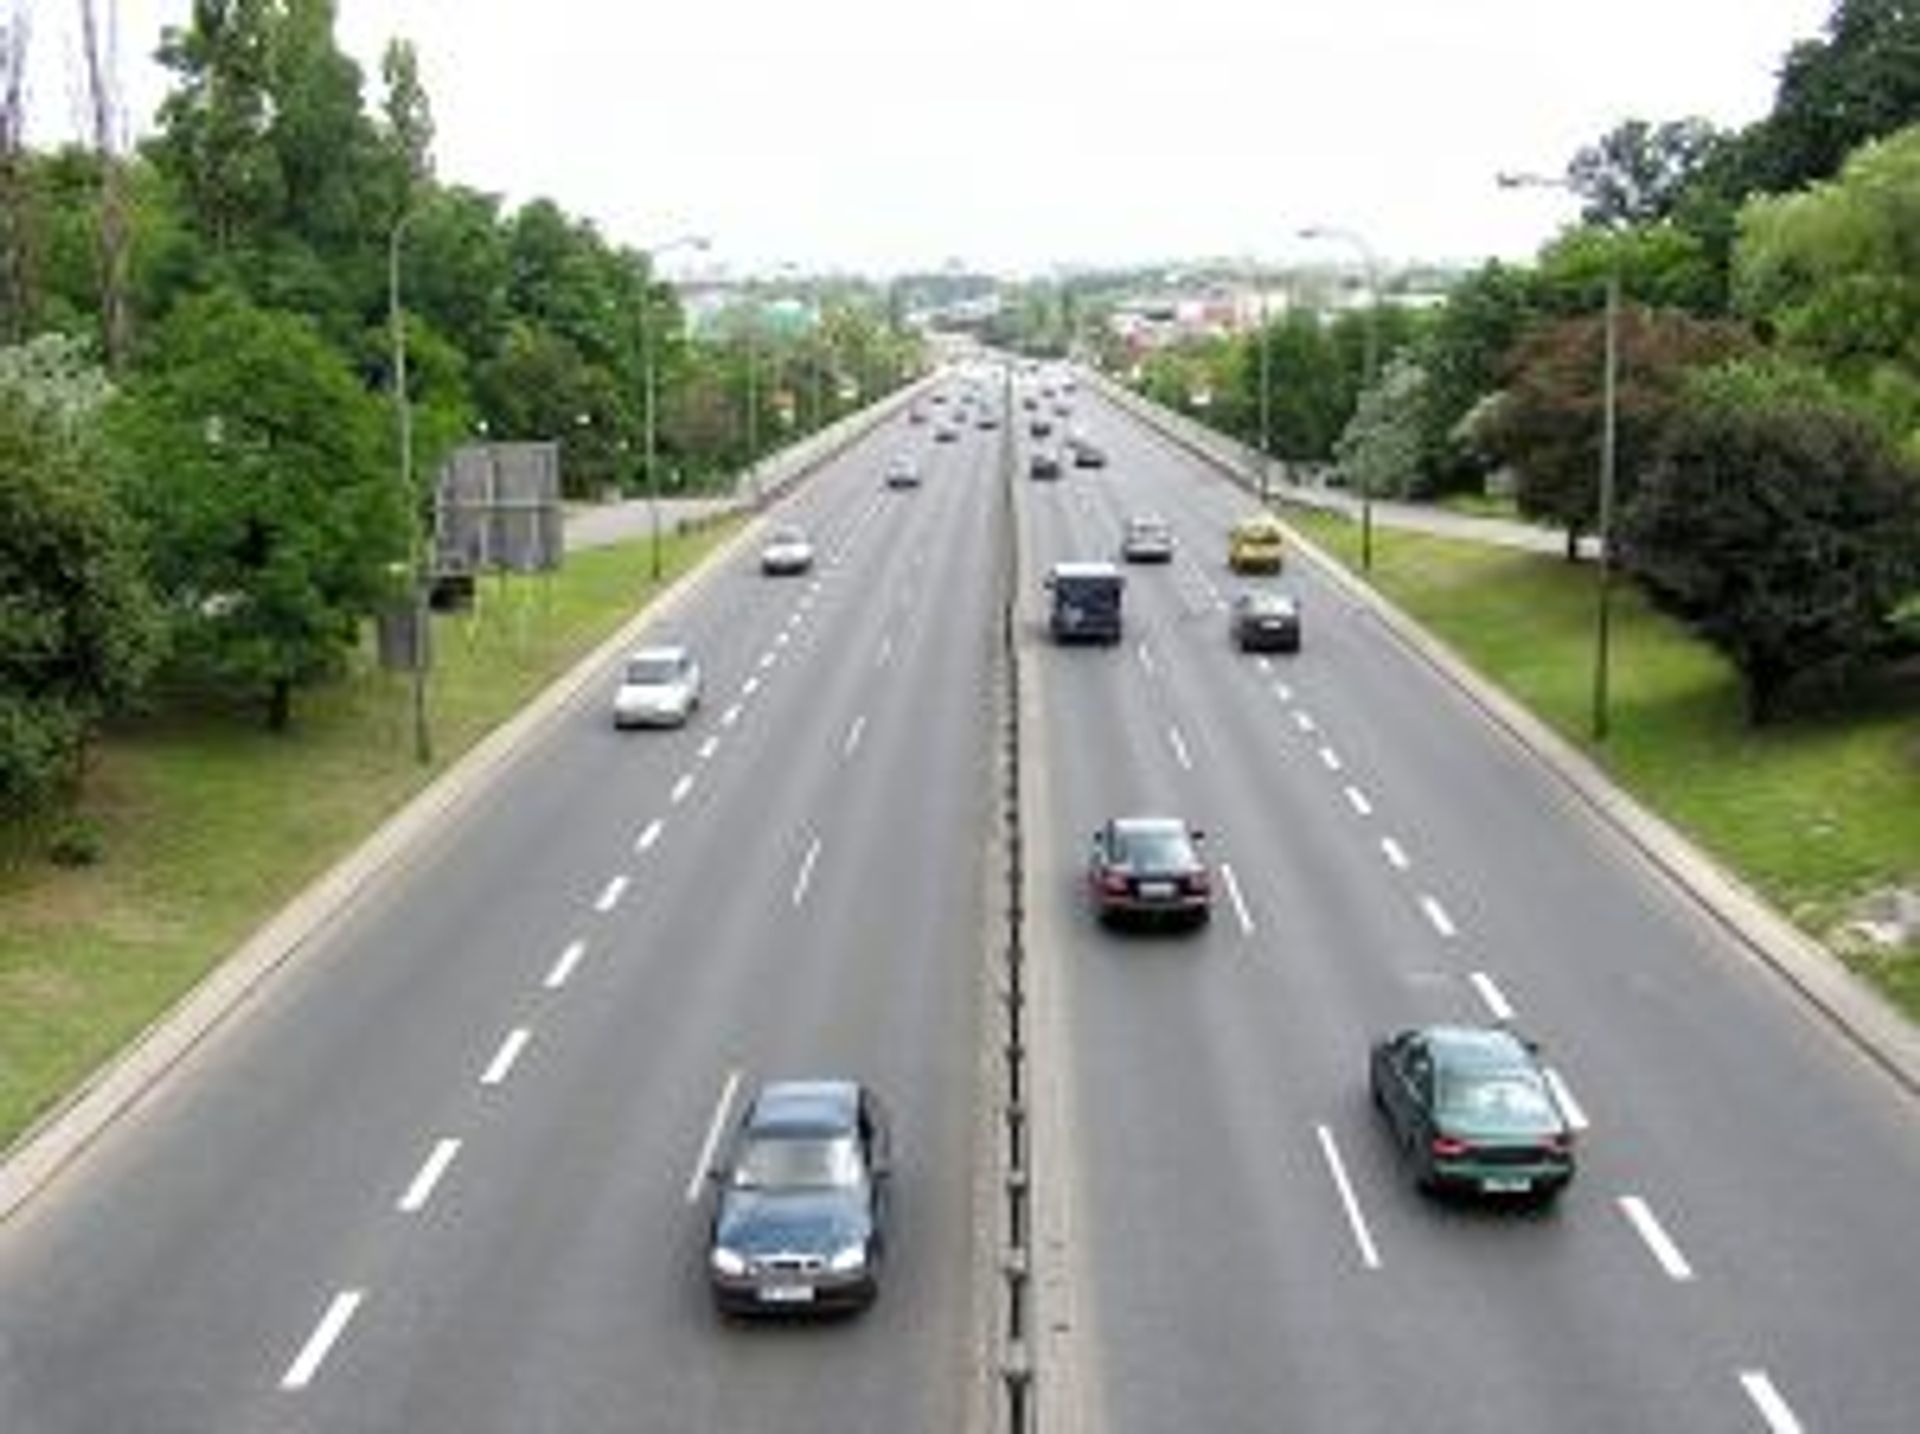  Racibórz i Śląskie: wspólna inwestycja drogowa